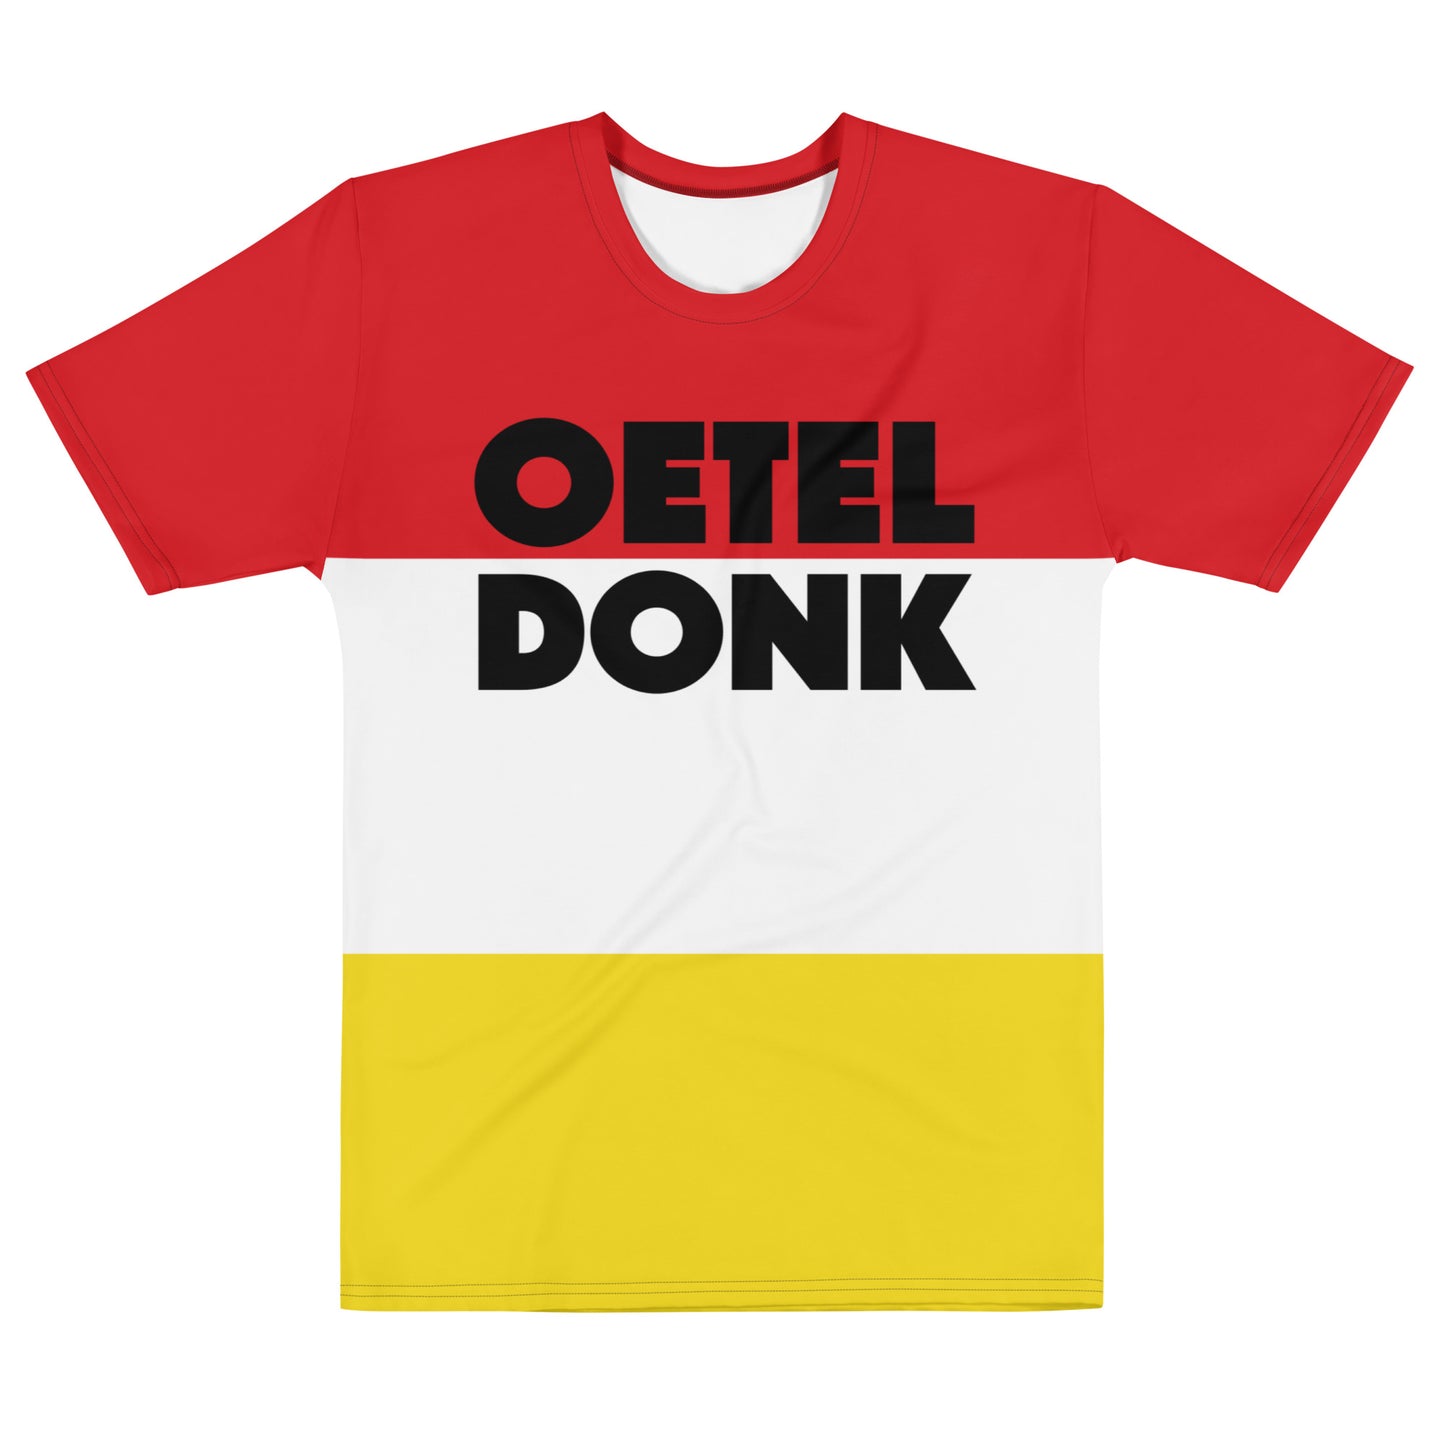 Oeteldonk T-shirt